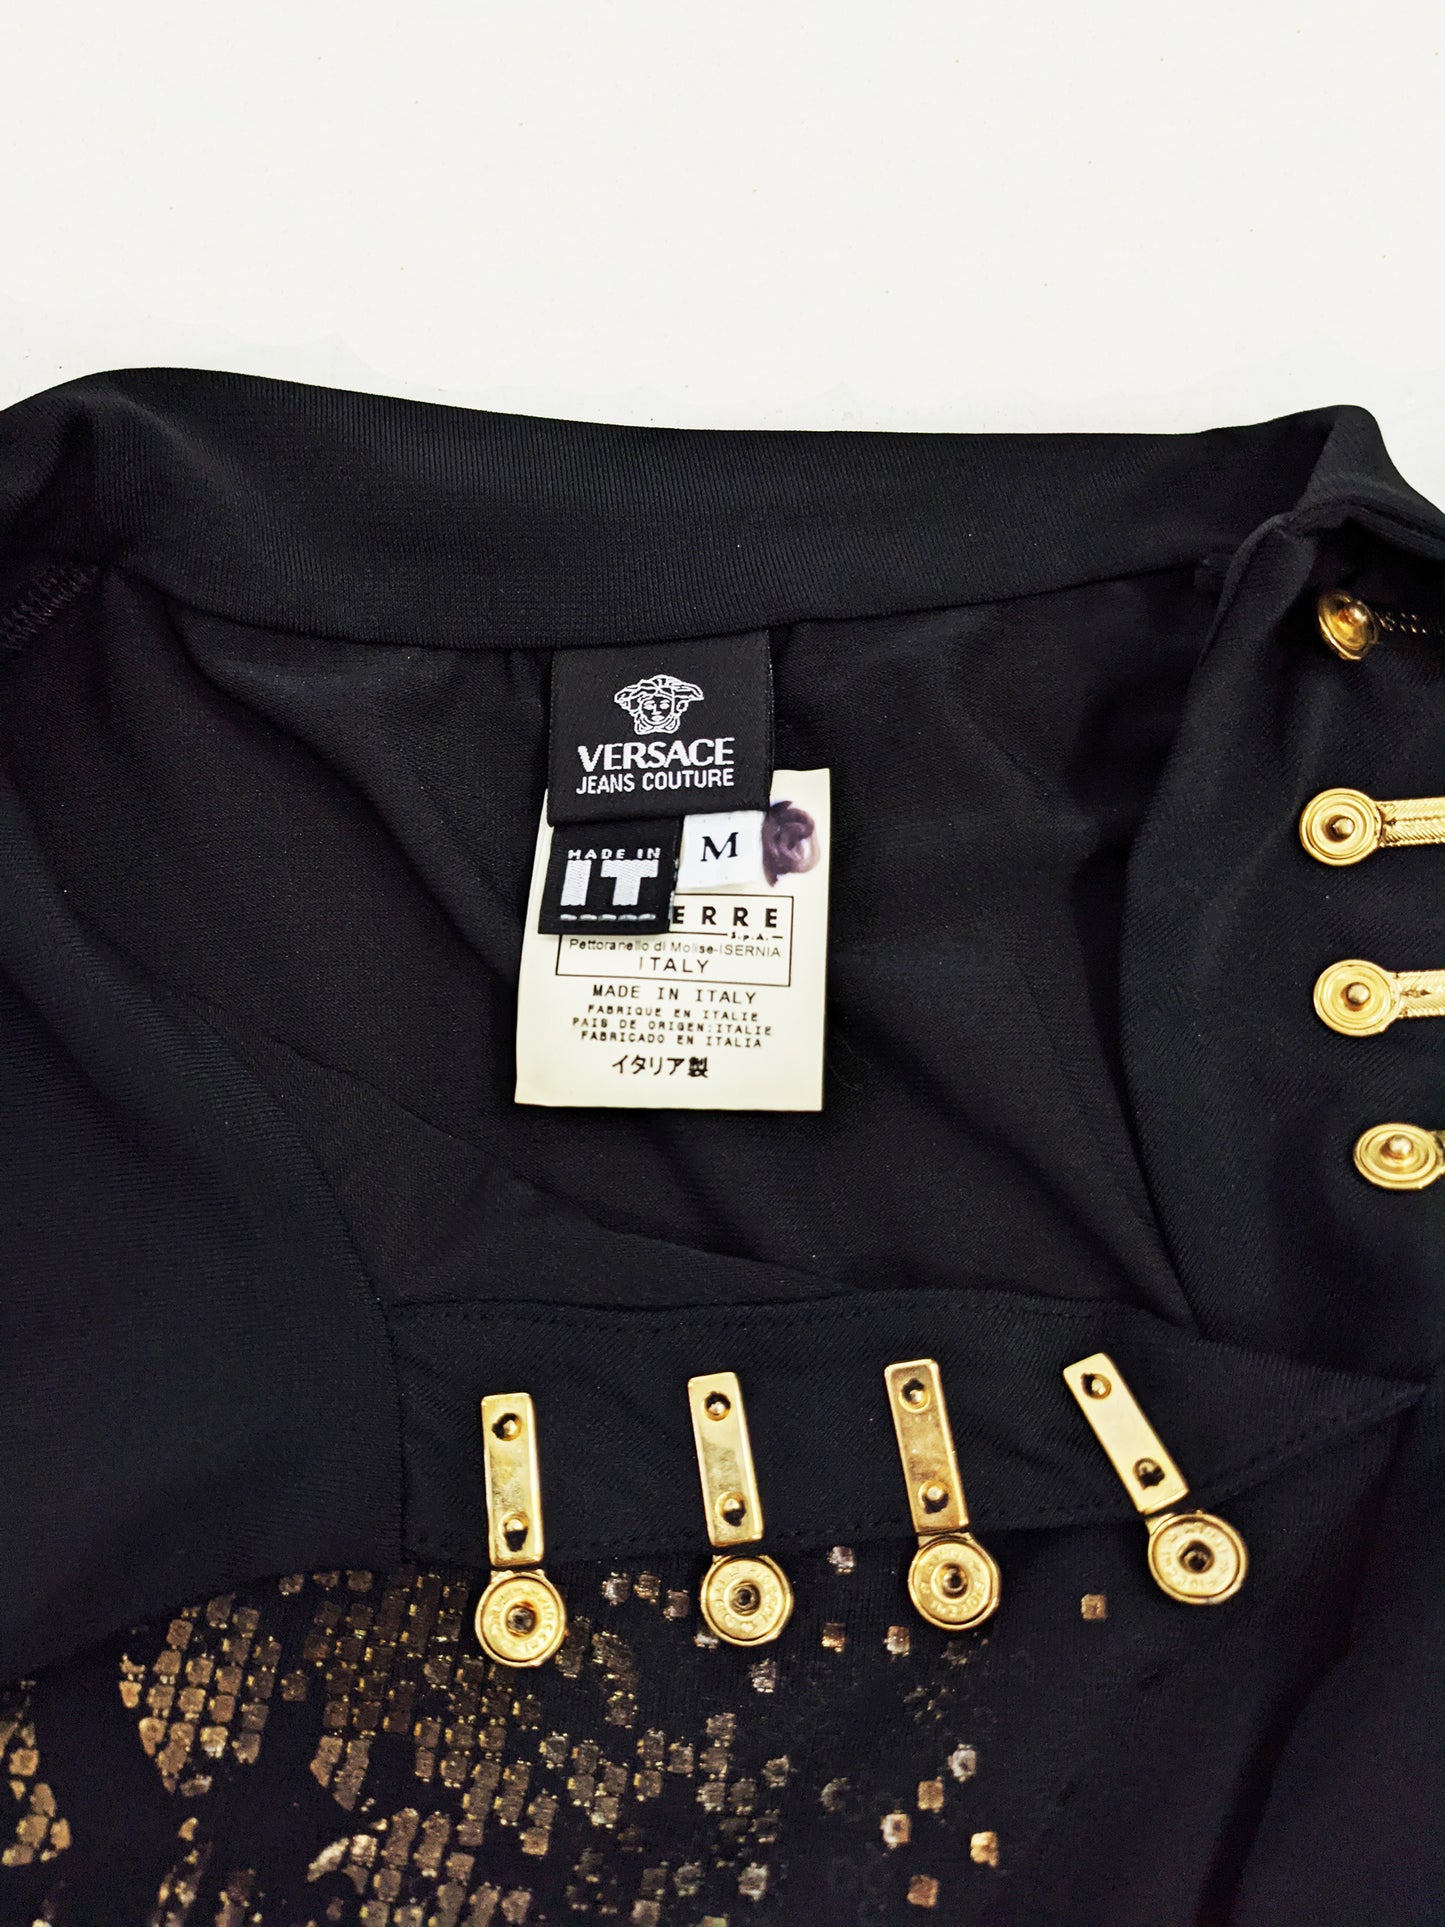 Versace Vintage Black & Gold 'Diva' Shirt, 2000s